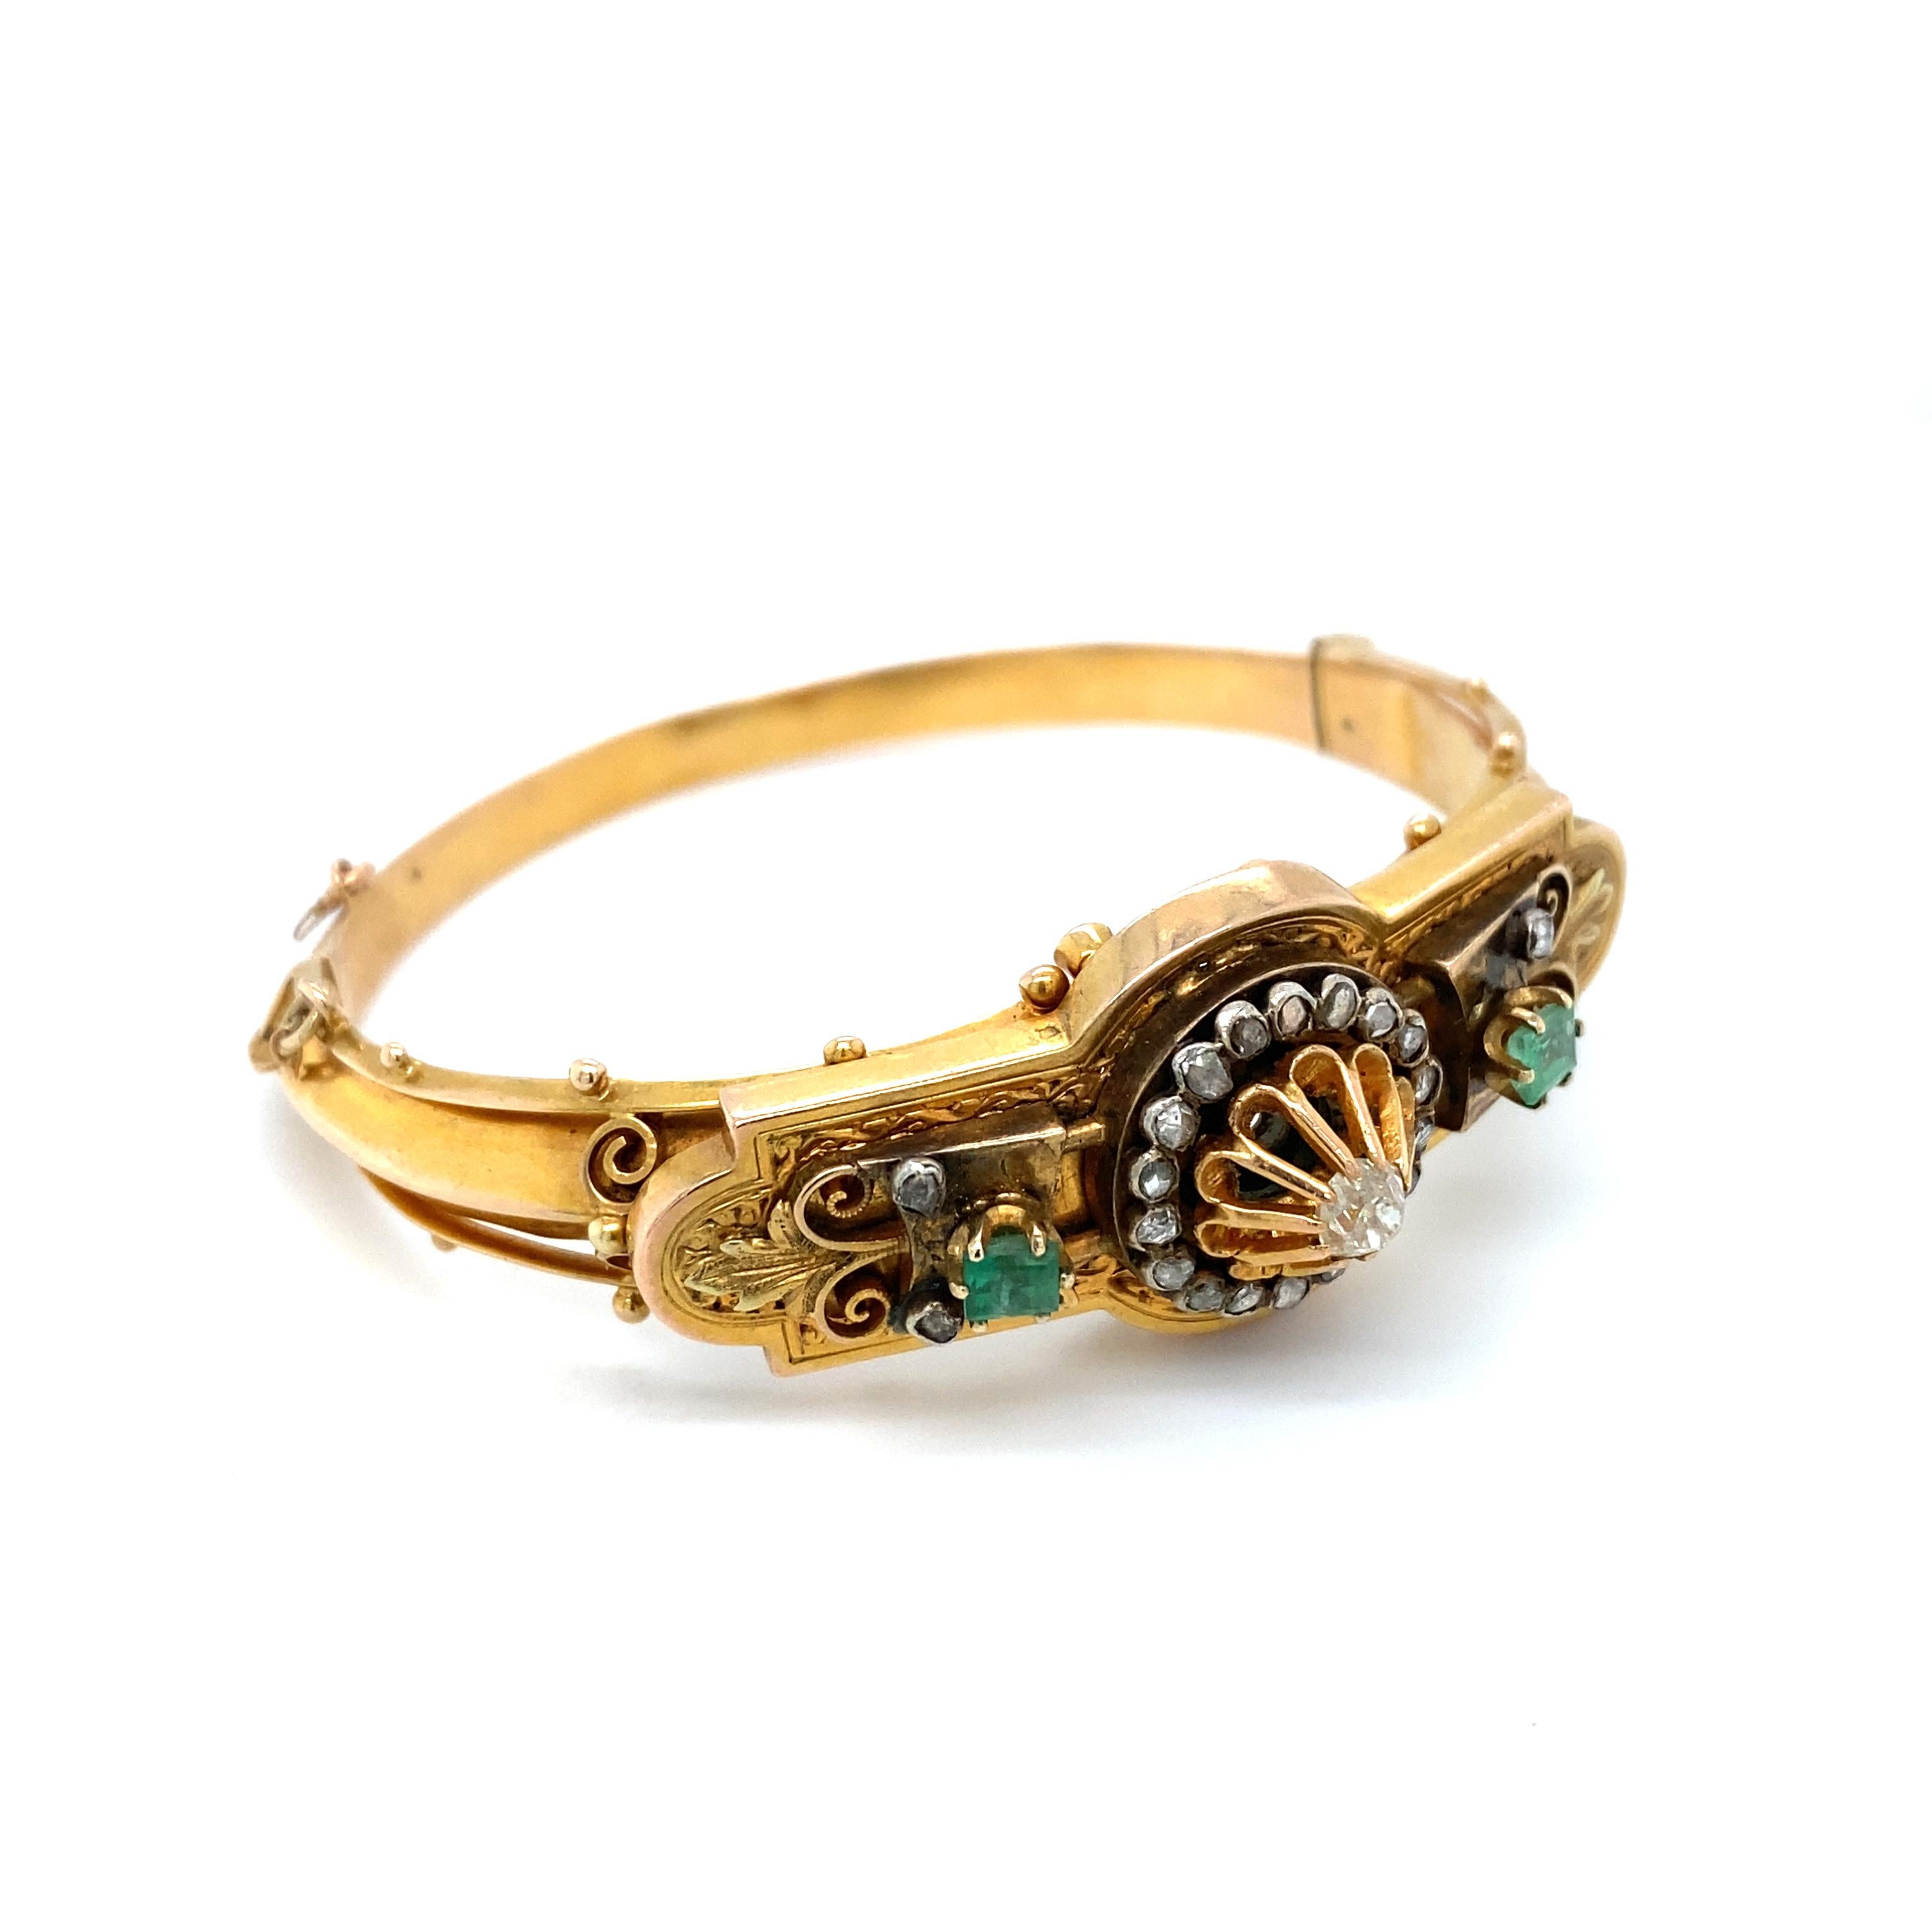 Détails de l'article : Ce bracelet à charnière de l'époque victorienne est une pièce de grande qualité qui a plus de 140 ans. Avec ses diamants et émeraudes brillants et ses détails complexes, ce bracelet est la marque de fabrique du design de l'ère